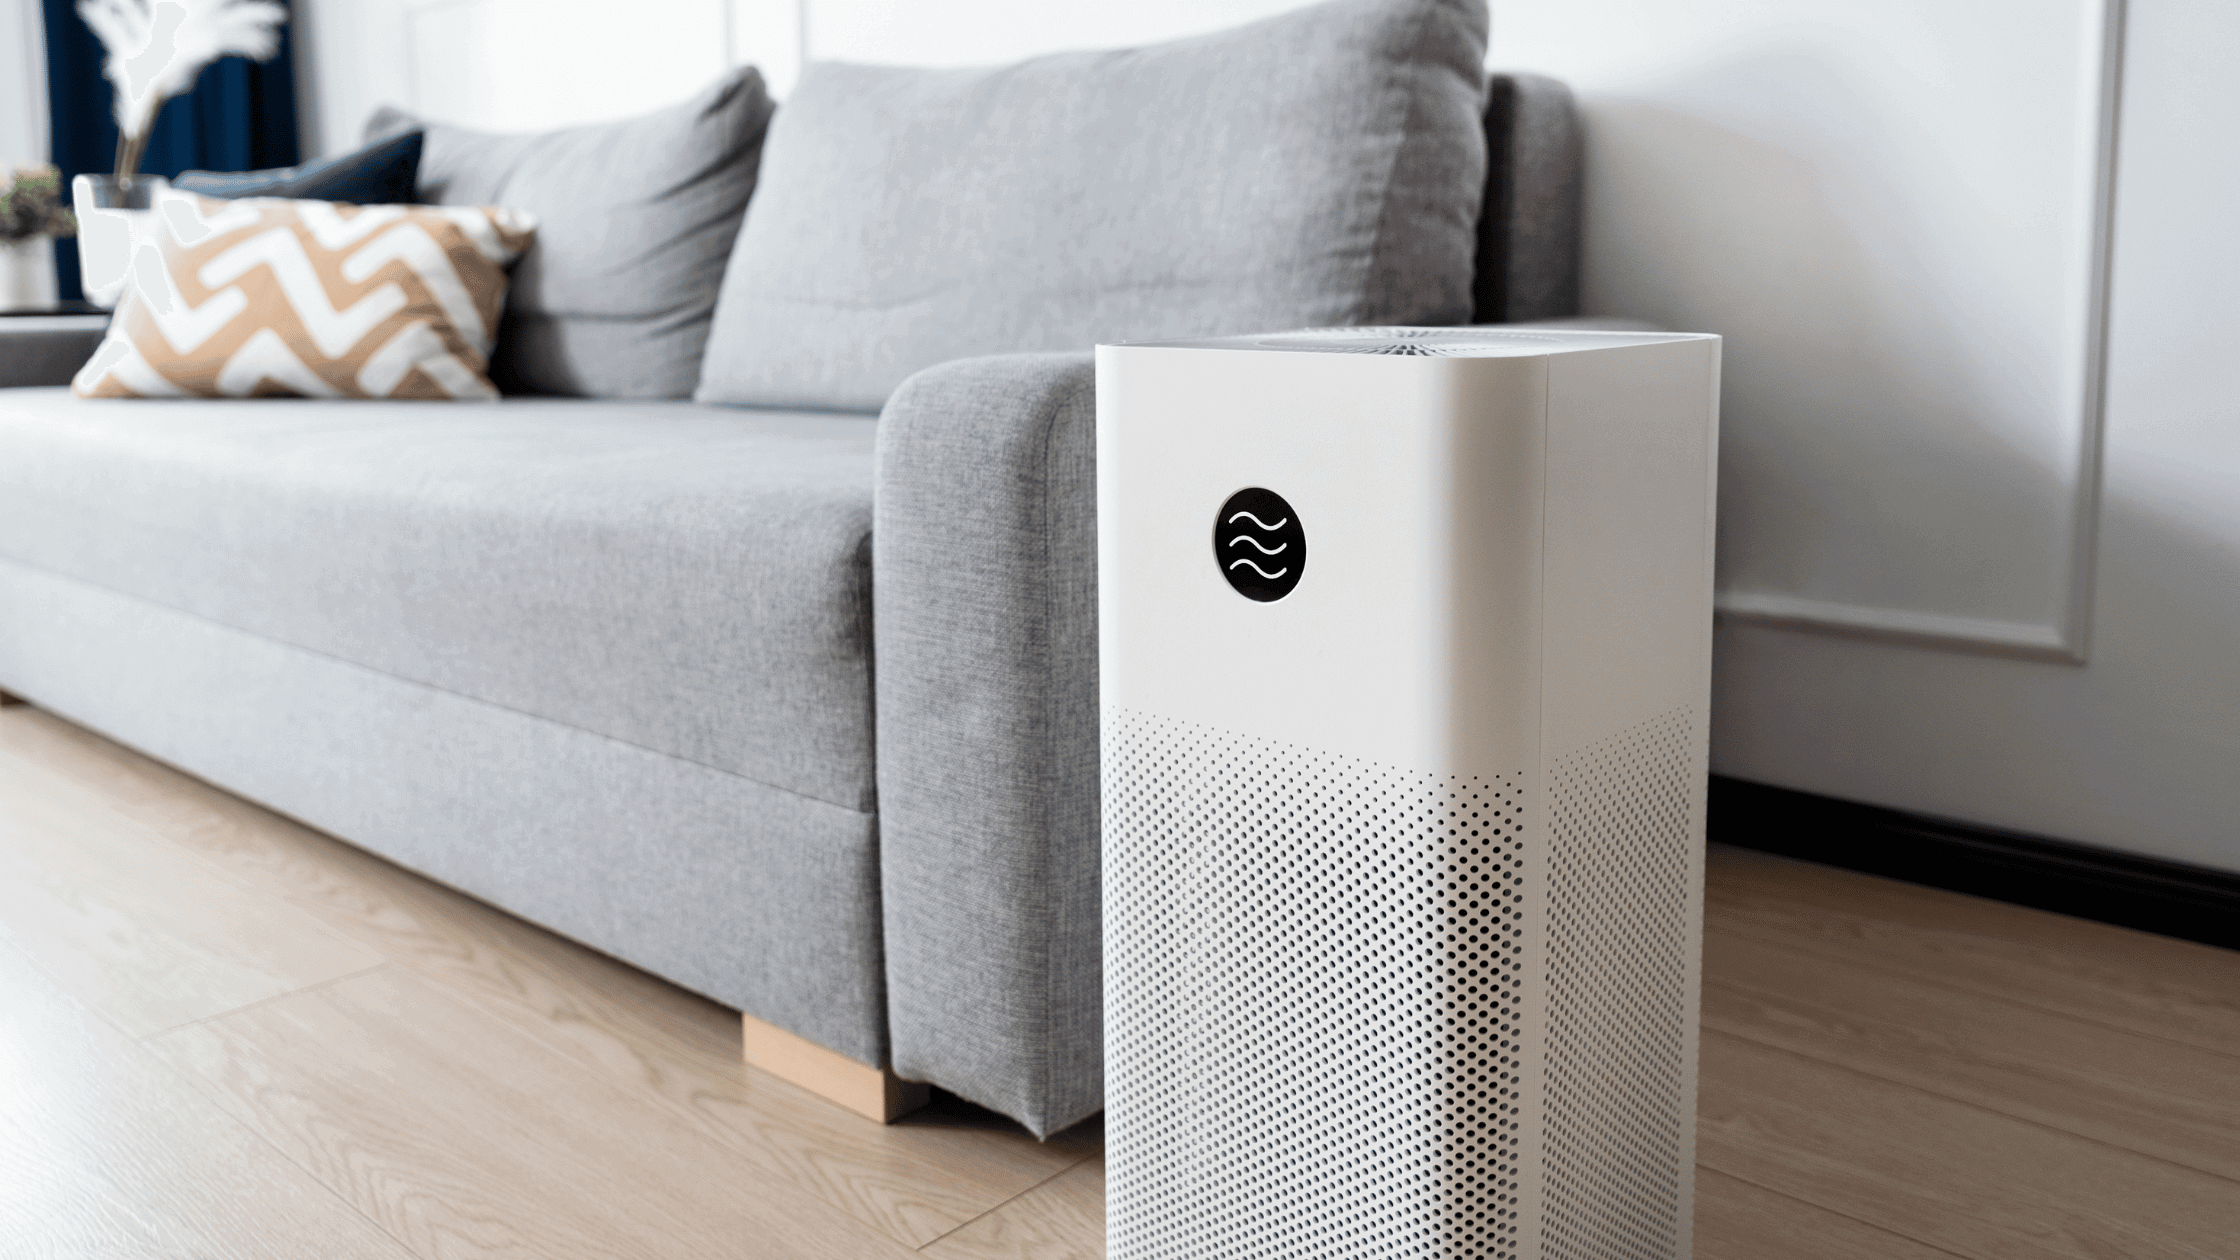 A imagem mostra um ar condicionado portátil branco em uma sala de estar.